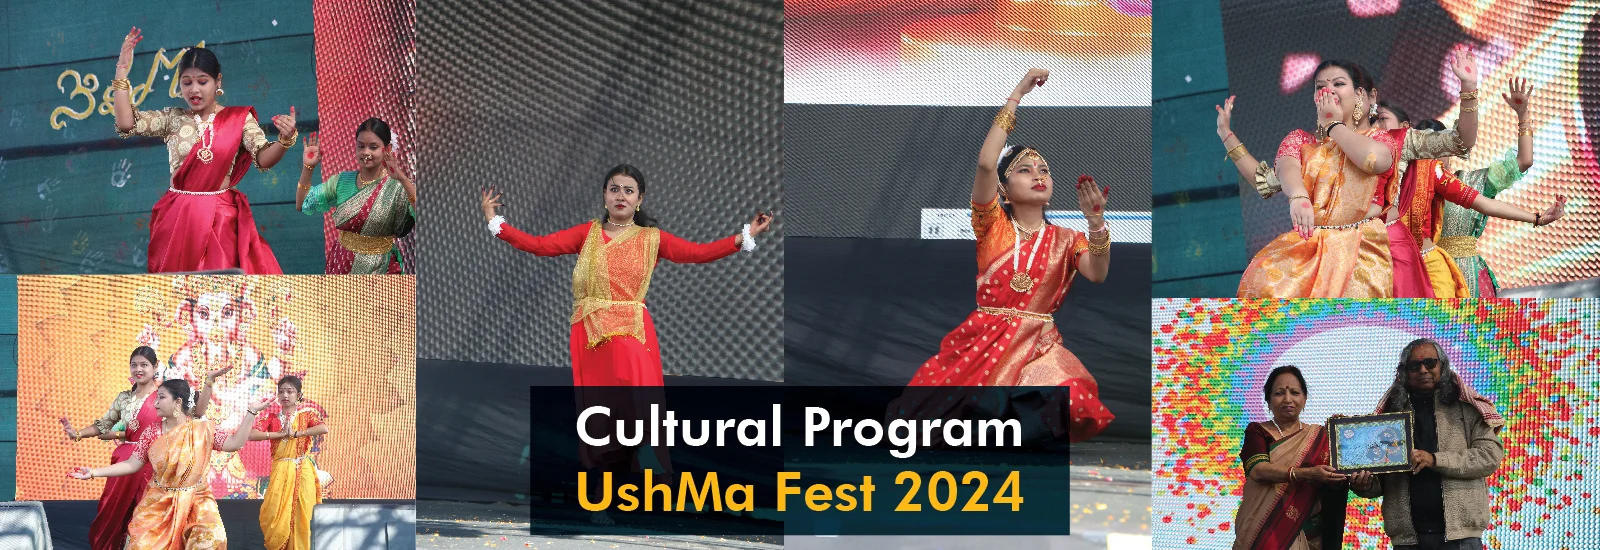 UshMa Fest 2024